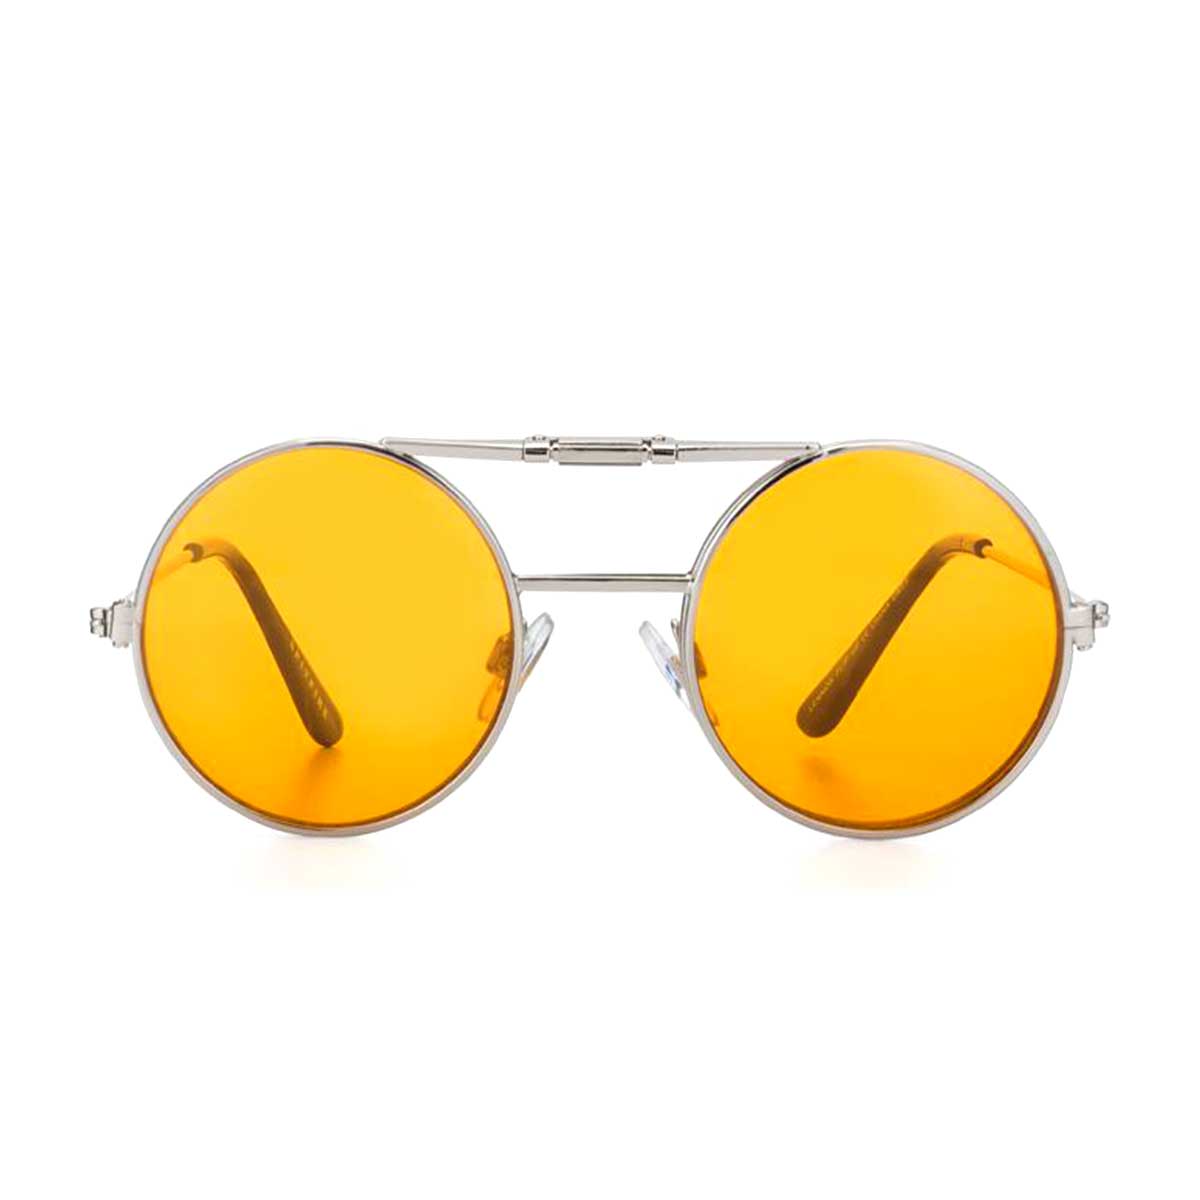 Spitfire Sunglasses Lennon Flip Orange